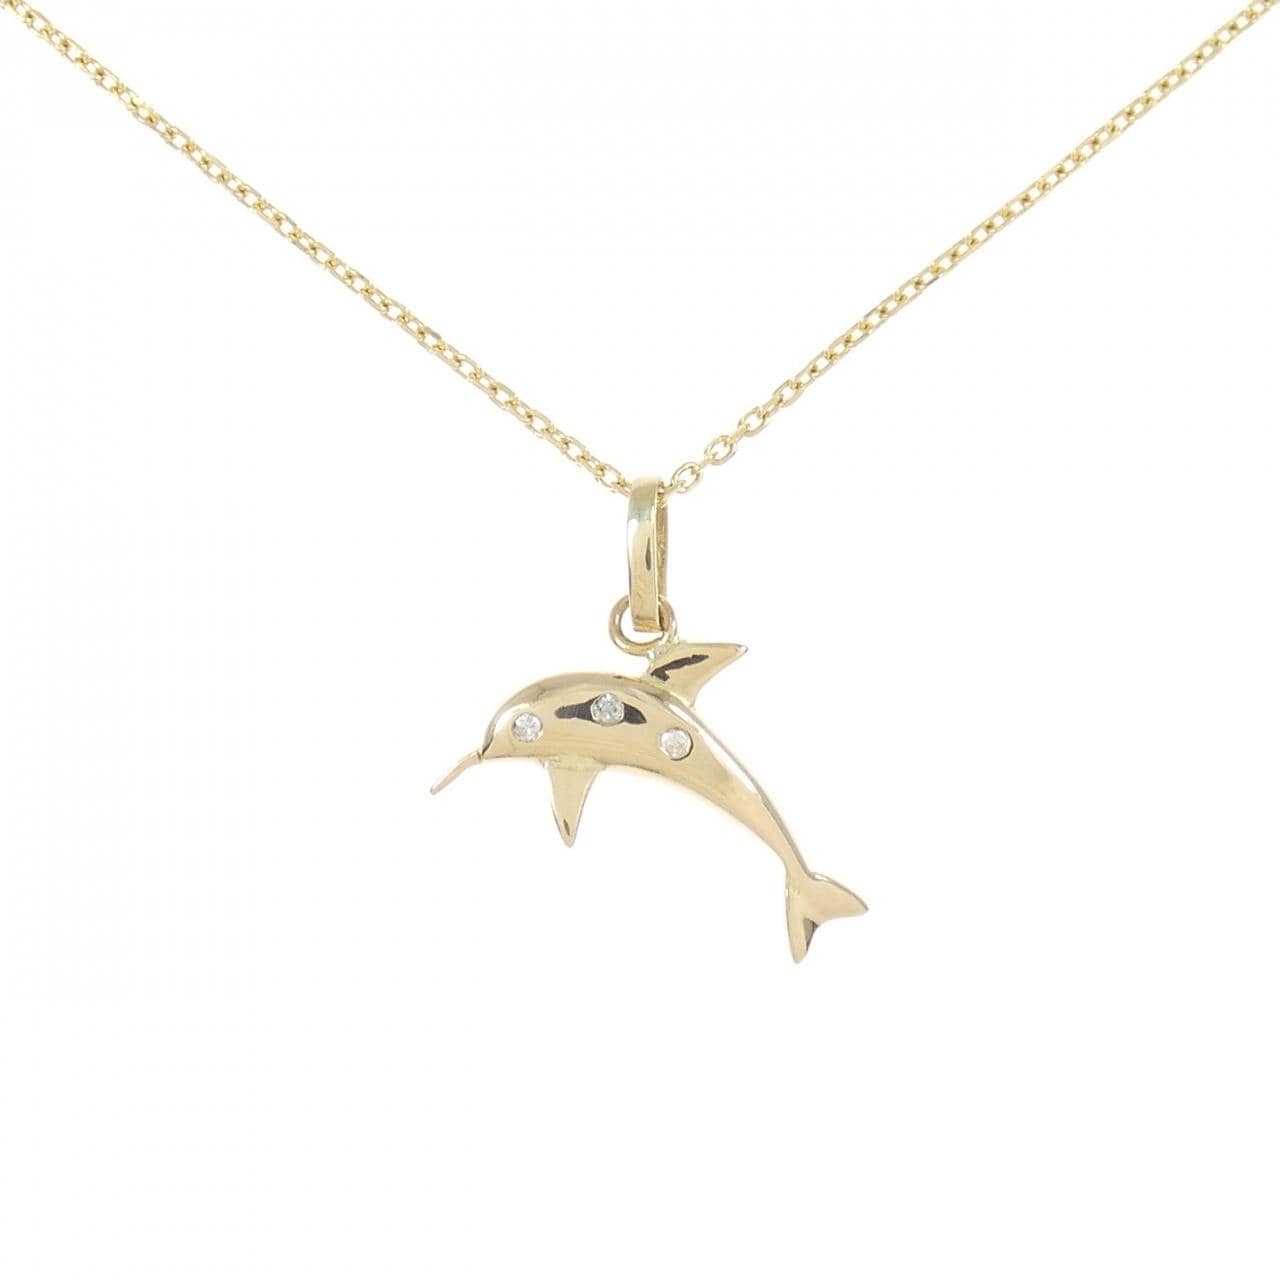 K18YG 海豚钻石项链